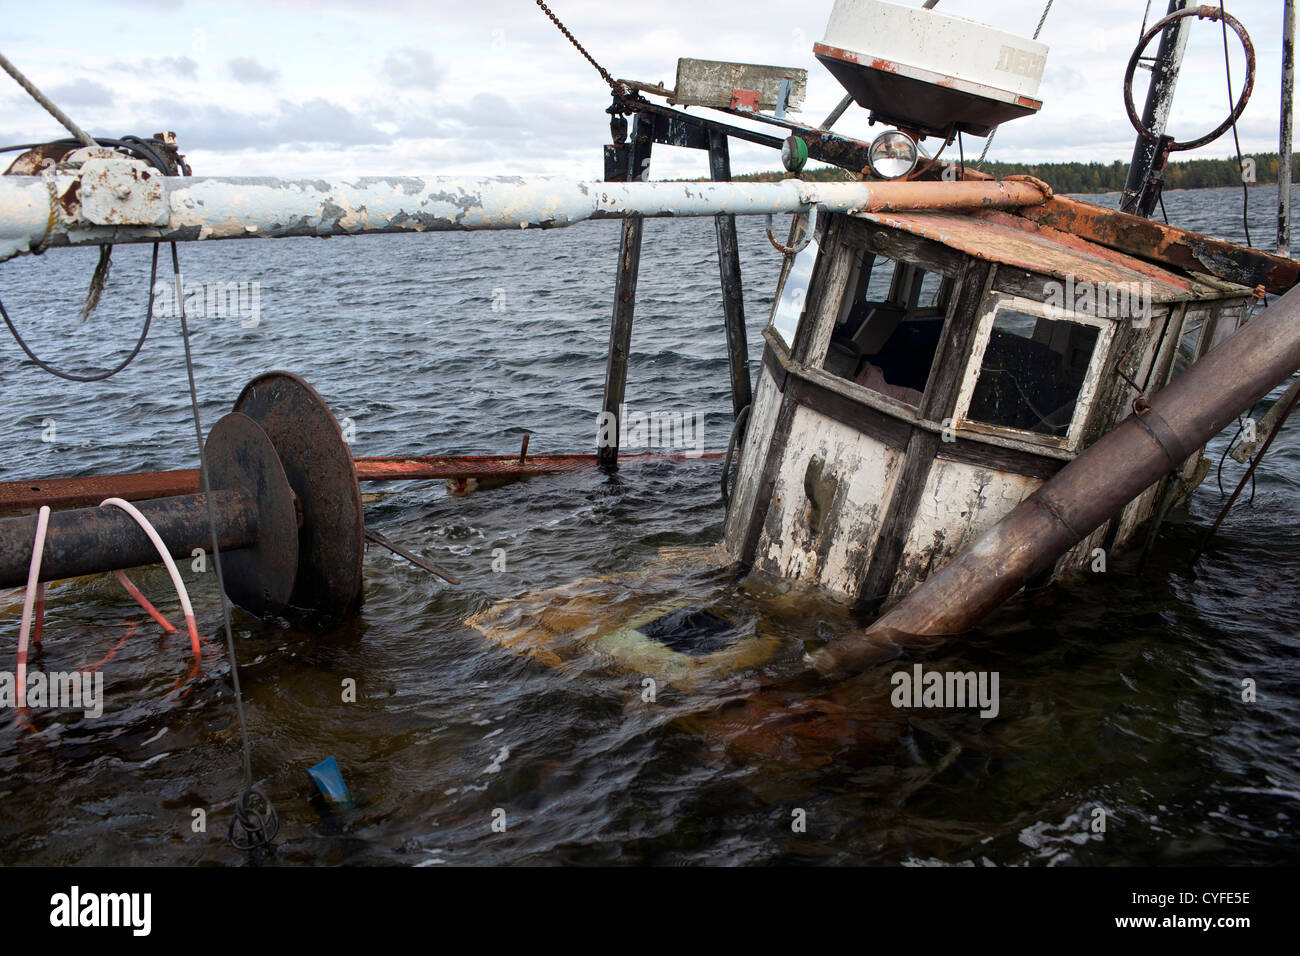 Sunken fishing boat in harbor Stock Photo